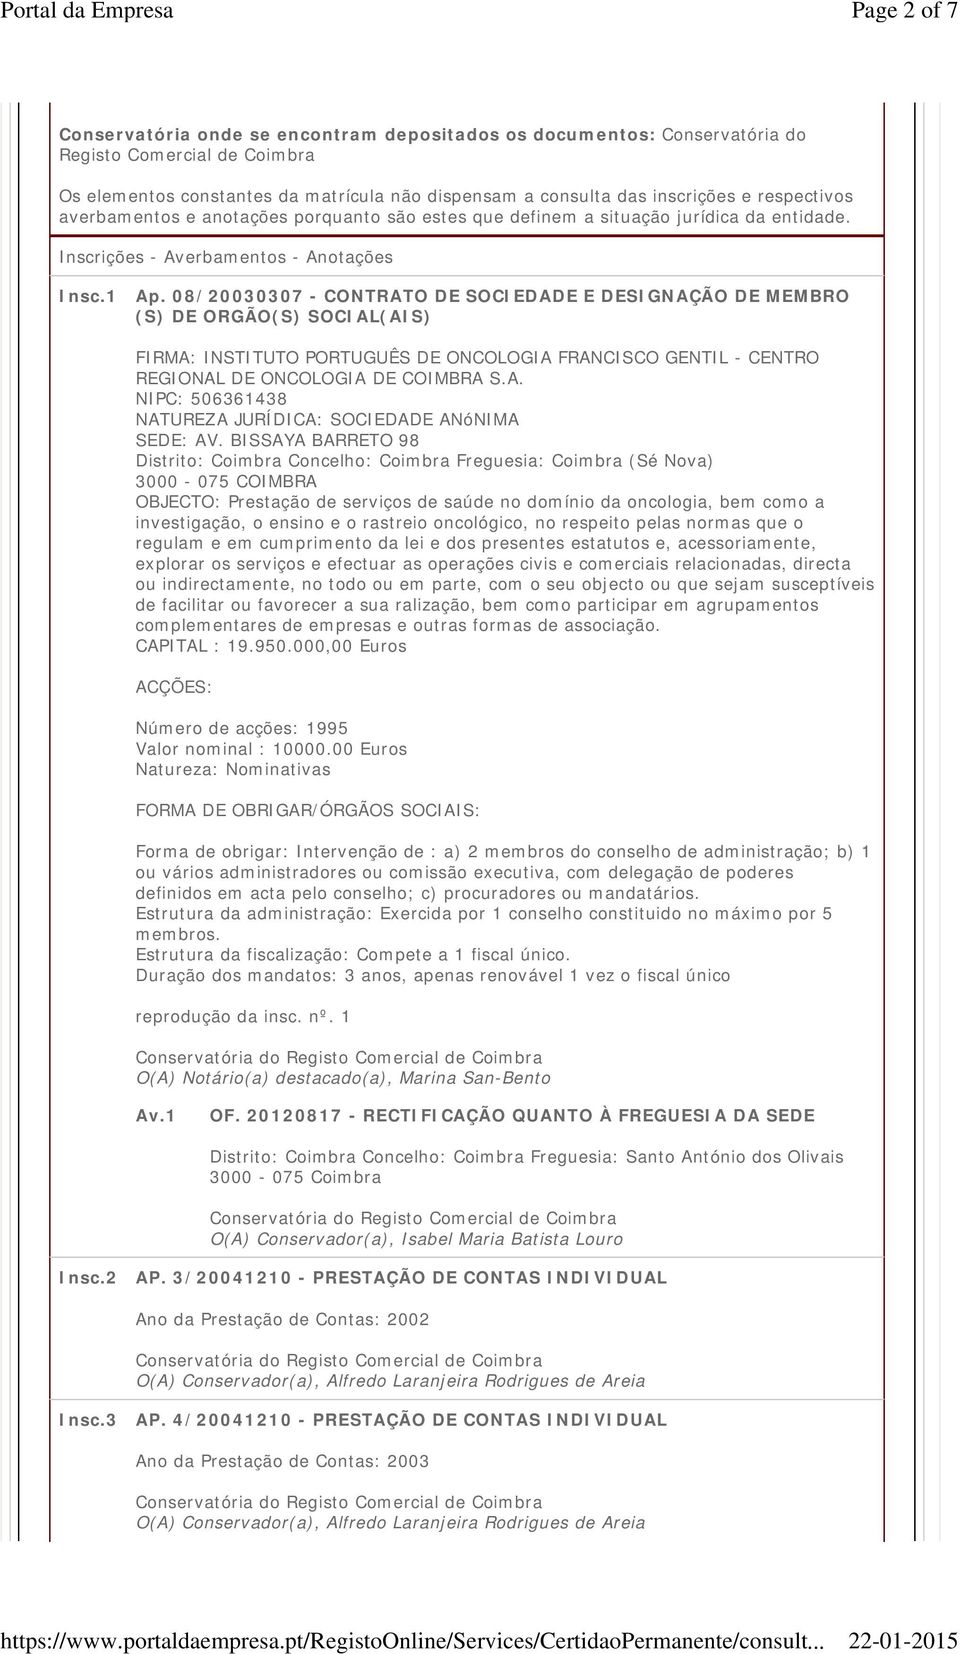 08/20030307 - CONTRATO DE SOCIEDADE E DESIGNAÇÃO DE MEMBRO (S) DE ORGÃO(S) SOCIAL(AIS) FIRMA: INSTITUTO PORTUGUÊS DE ONCOLOGIA FRANCISCO GENTIL - CENTRO REGIONAL DE ONCOLOGIA DE COIMBRA S.A. NIPC: 506361438 NATUREZA JURÍDICA: SOCIEDADE ANóNIMA SEDE: AV.